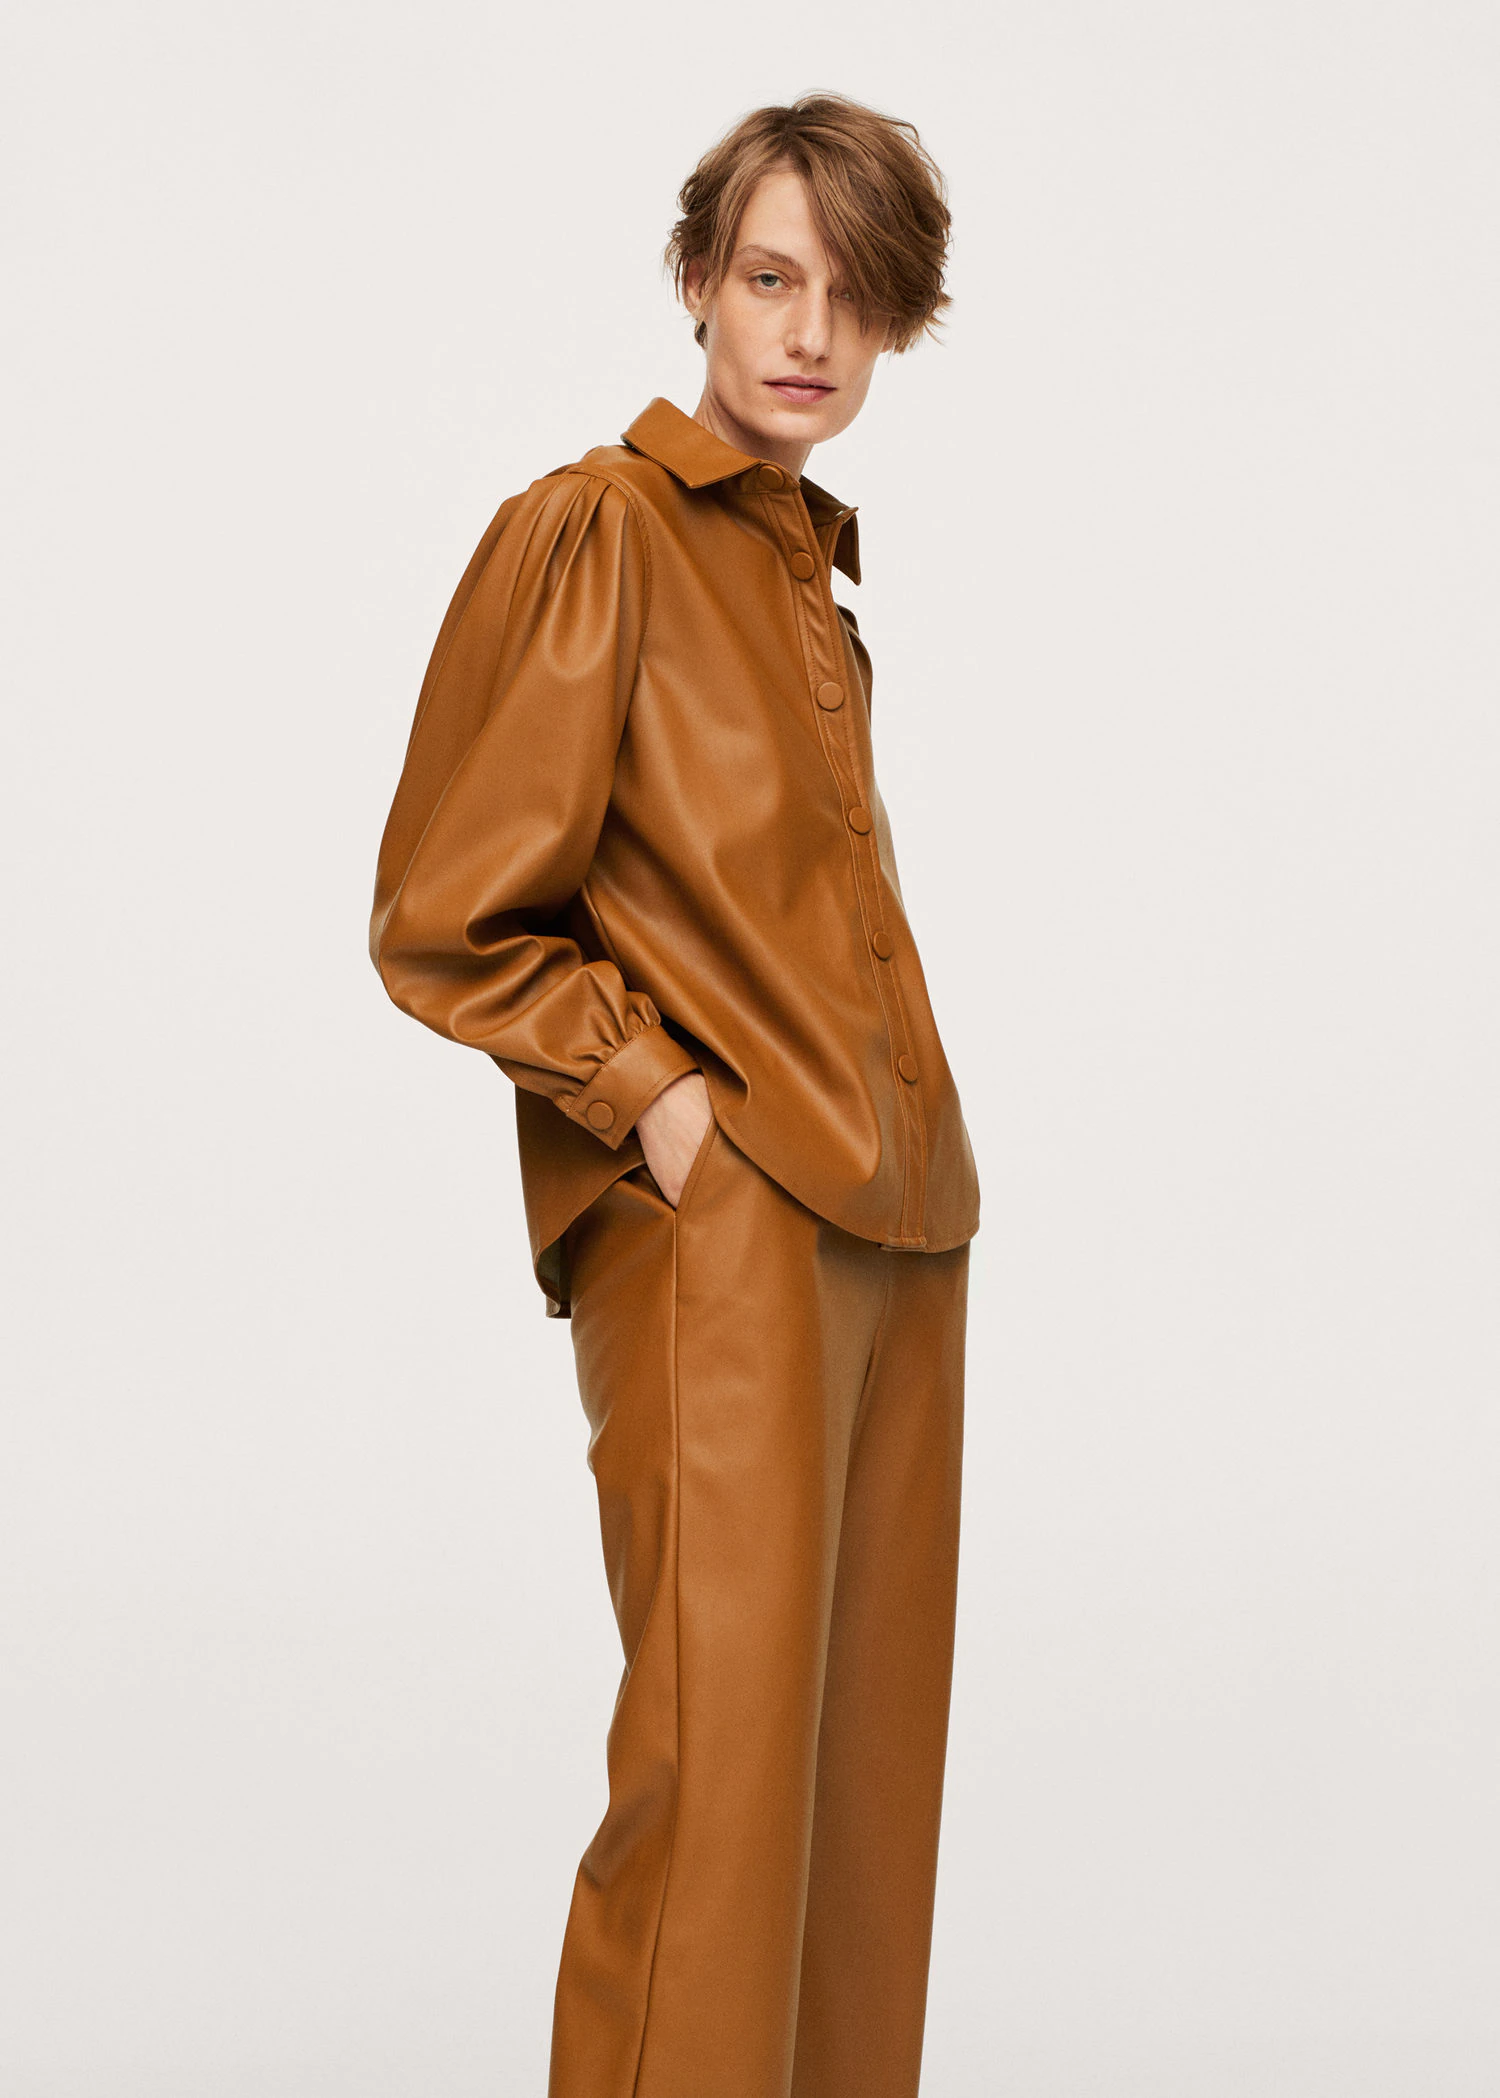 Seis camisas Zara Mango que demuestran el marrón es el nuevo negro | Moda